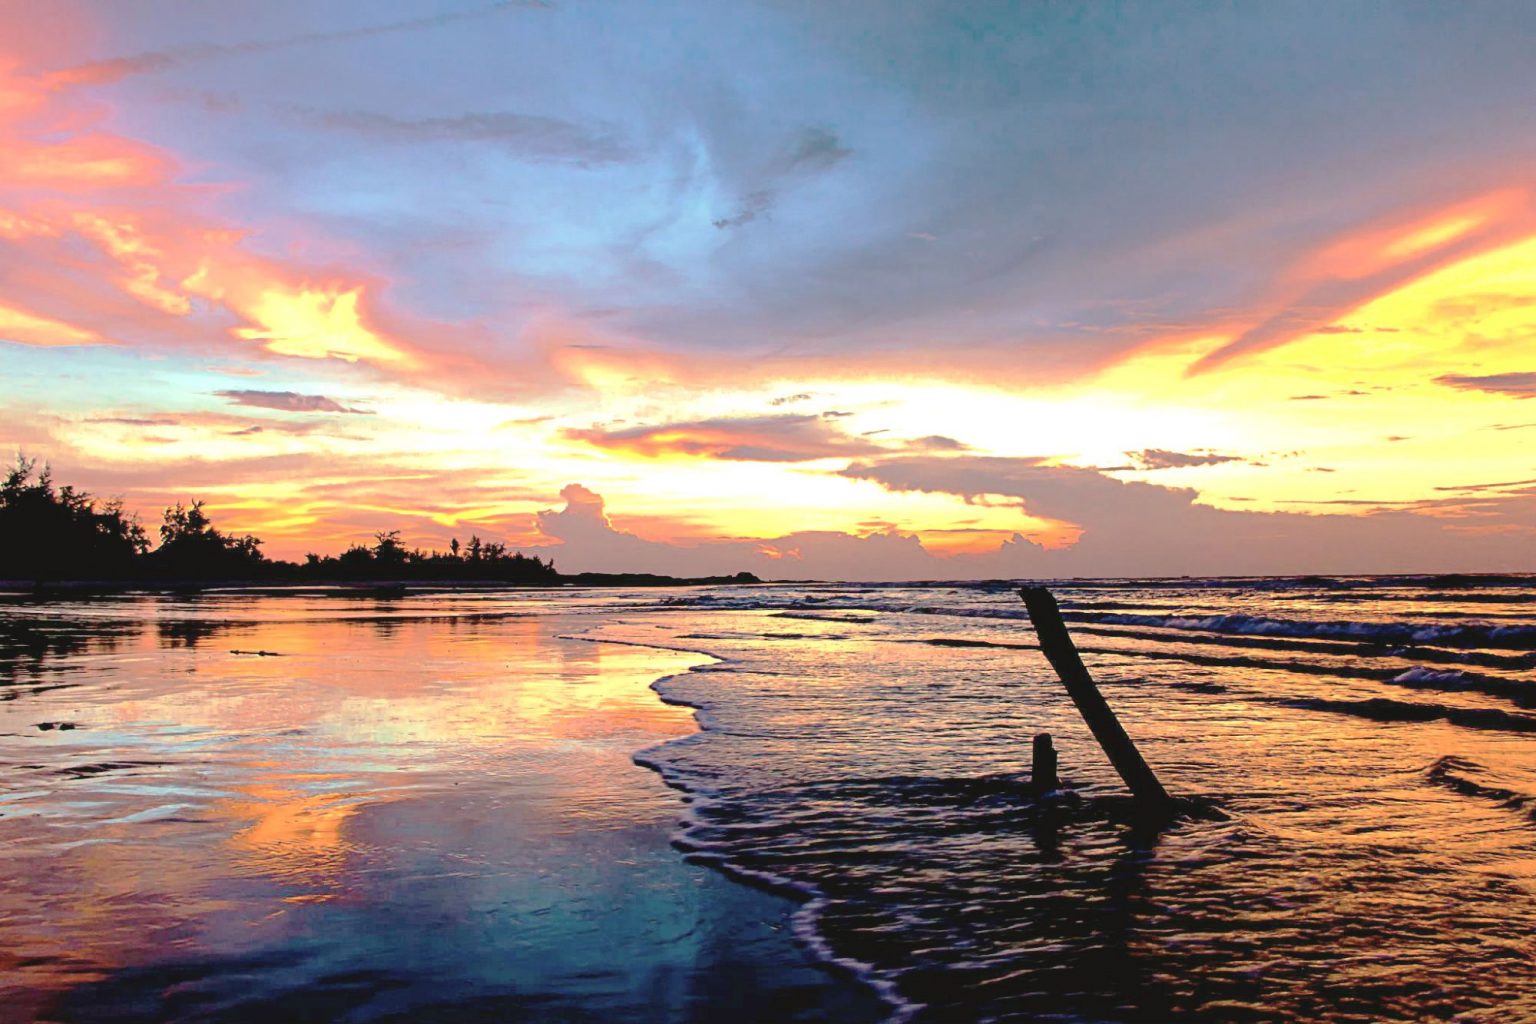 Ngỡ ngàng với Top 7 bãi biển đẹp ở Vũng Tàu gây thương nhớ